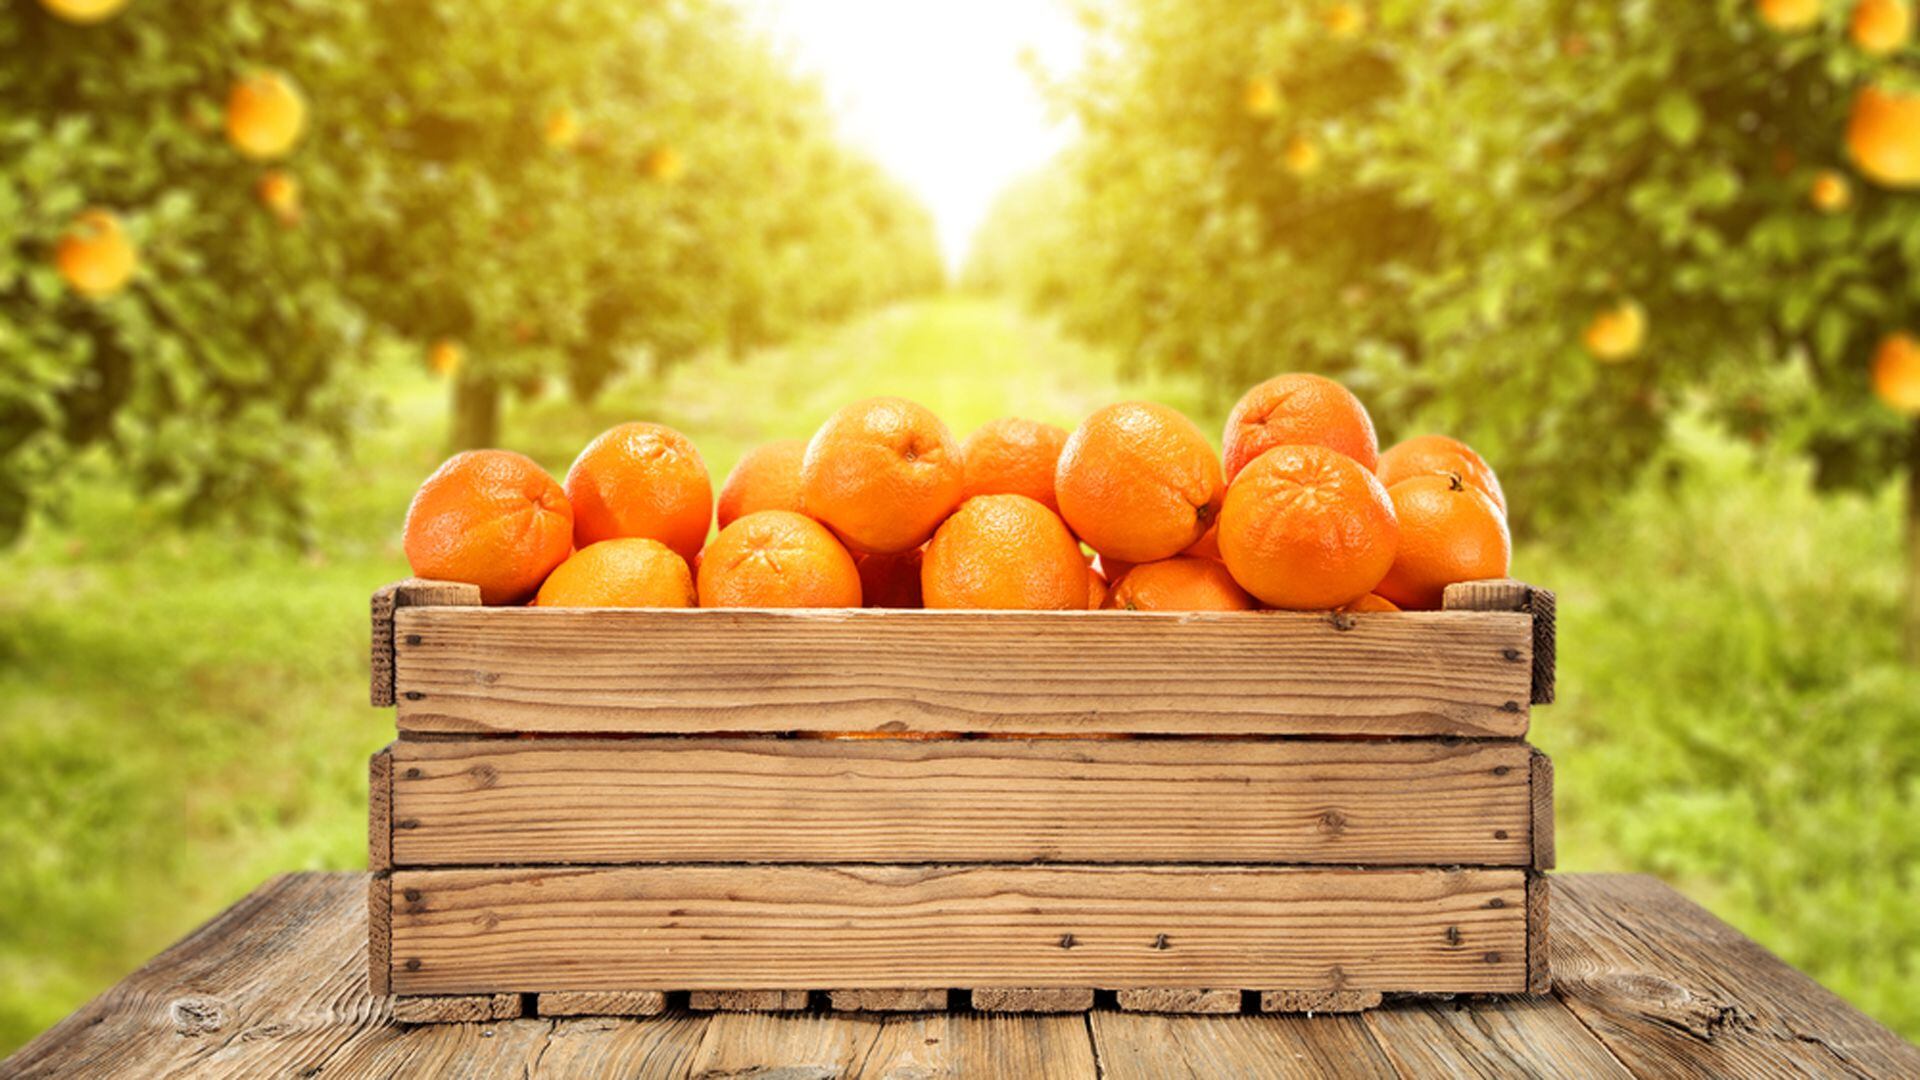 La naranja y la mandarina: aliados sabrosos contra el colesterol alto
Archivo